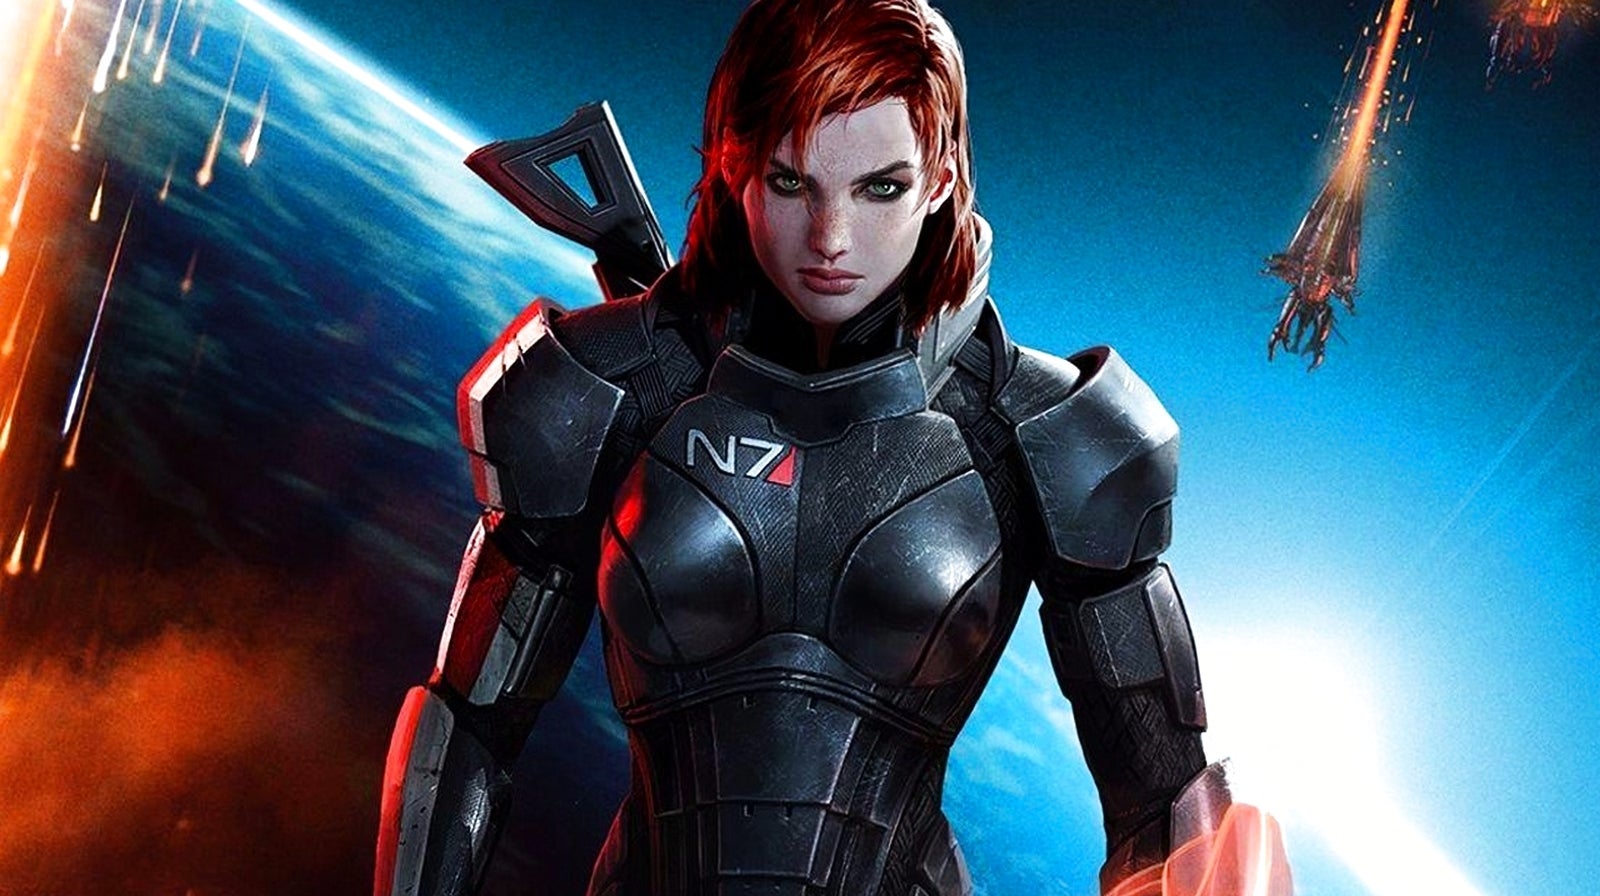 Bilder zu Mass Effect: Was bisher geschah - Die komplette Geschichte bis Andromeda (Spoiler)